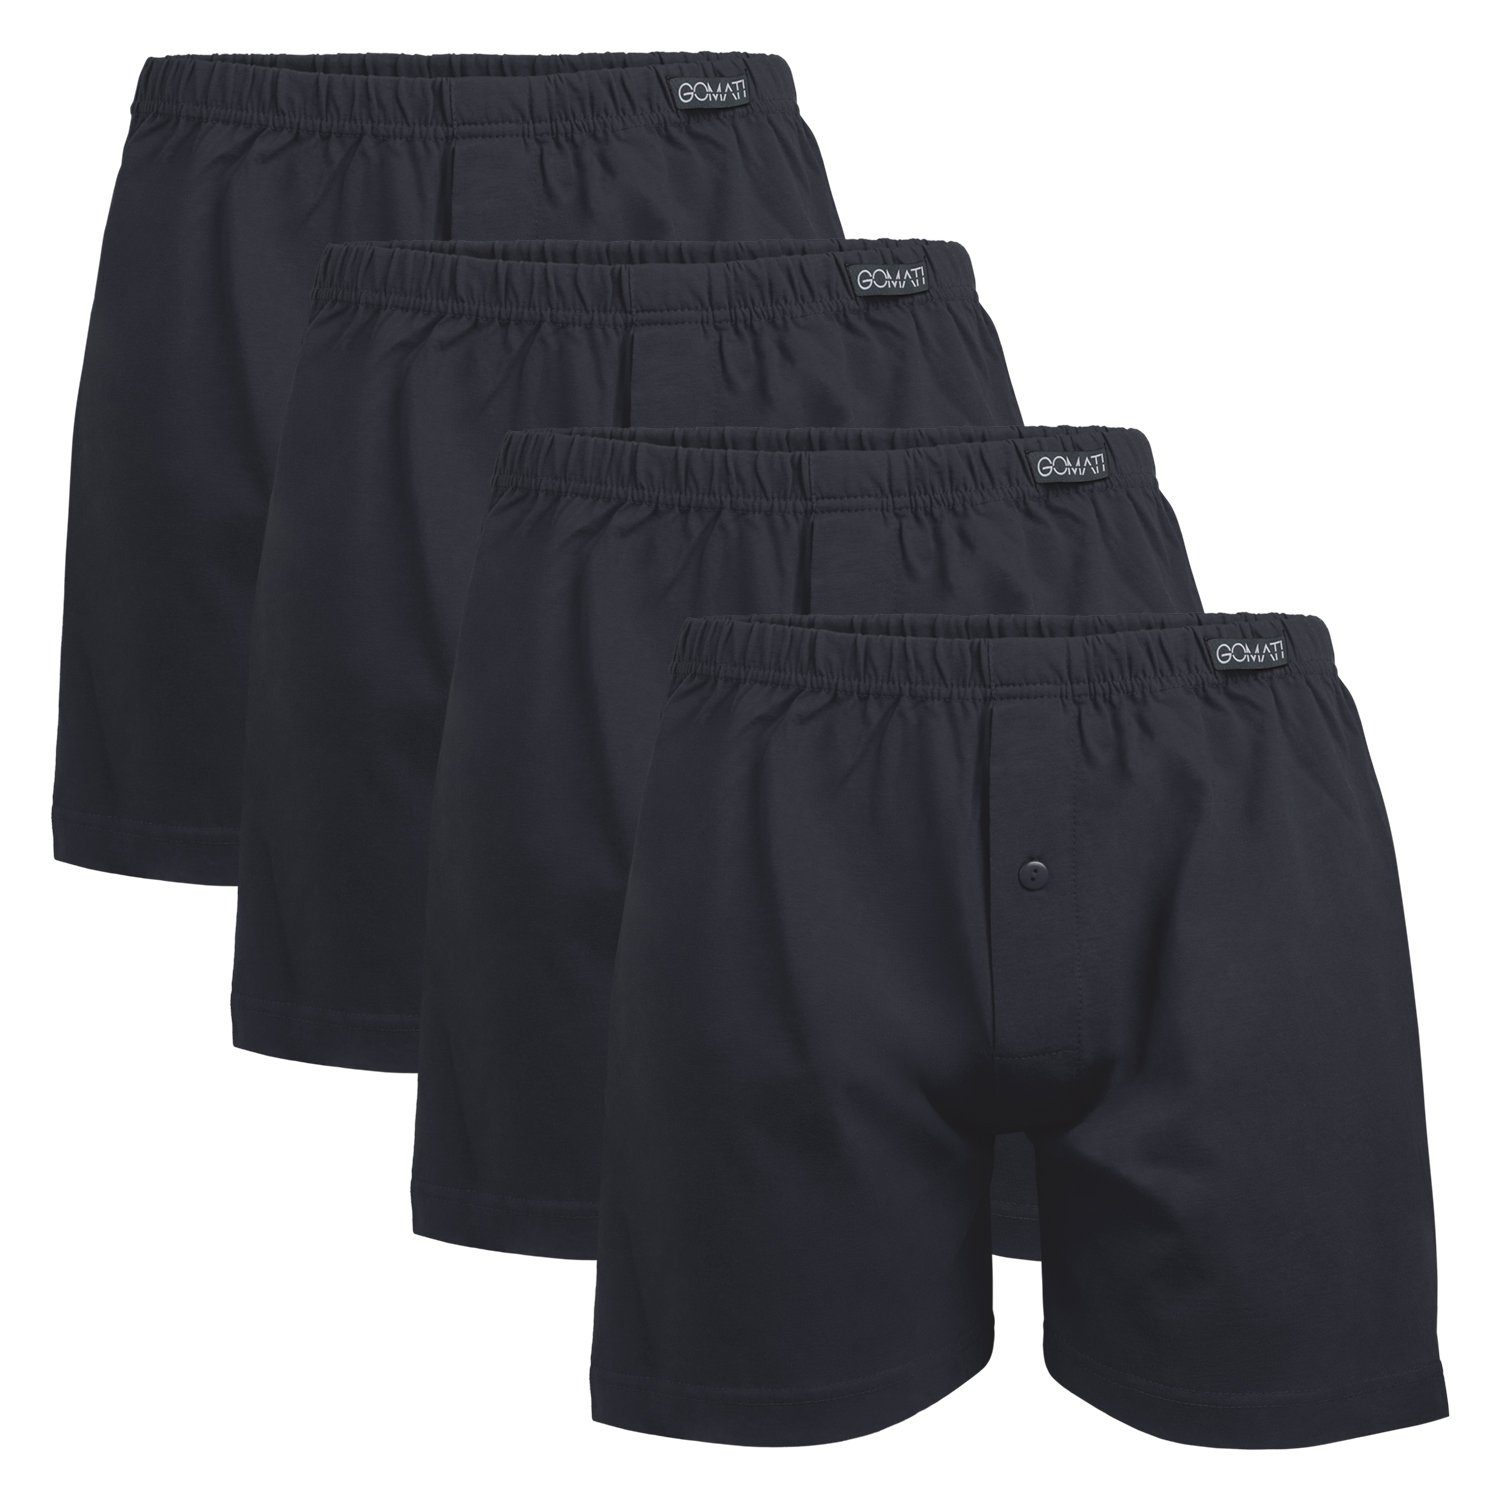 Gomati Boxershorts Herren Jersey Boxershorts Stretch Shorts aus Baumwolle (4er Pack) Schwarz